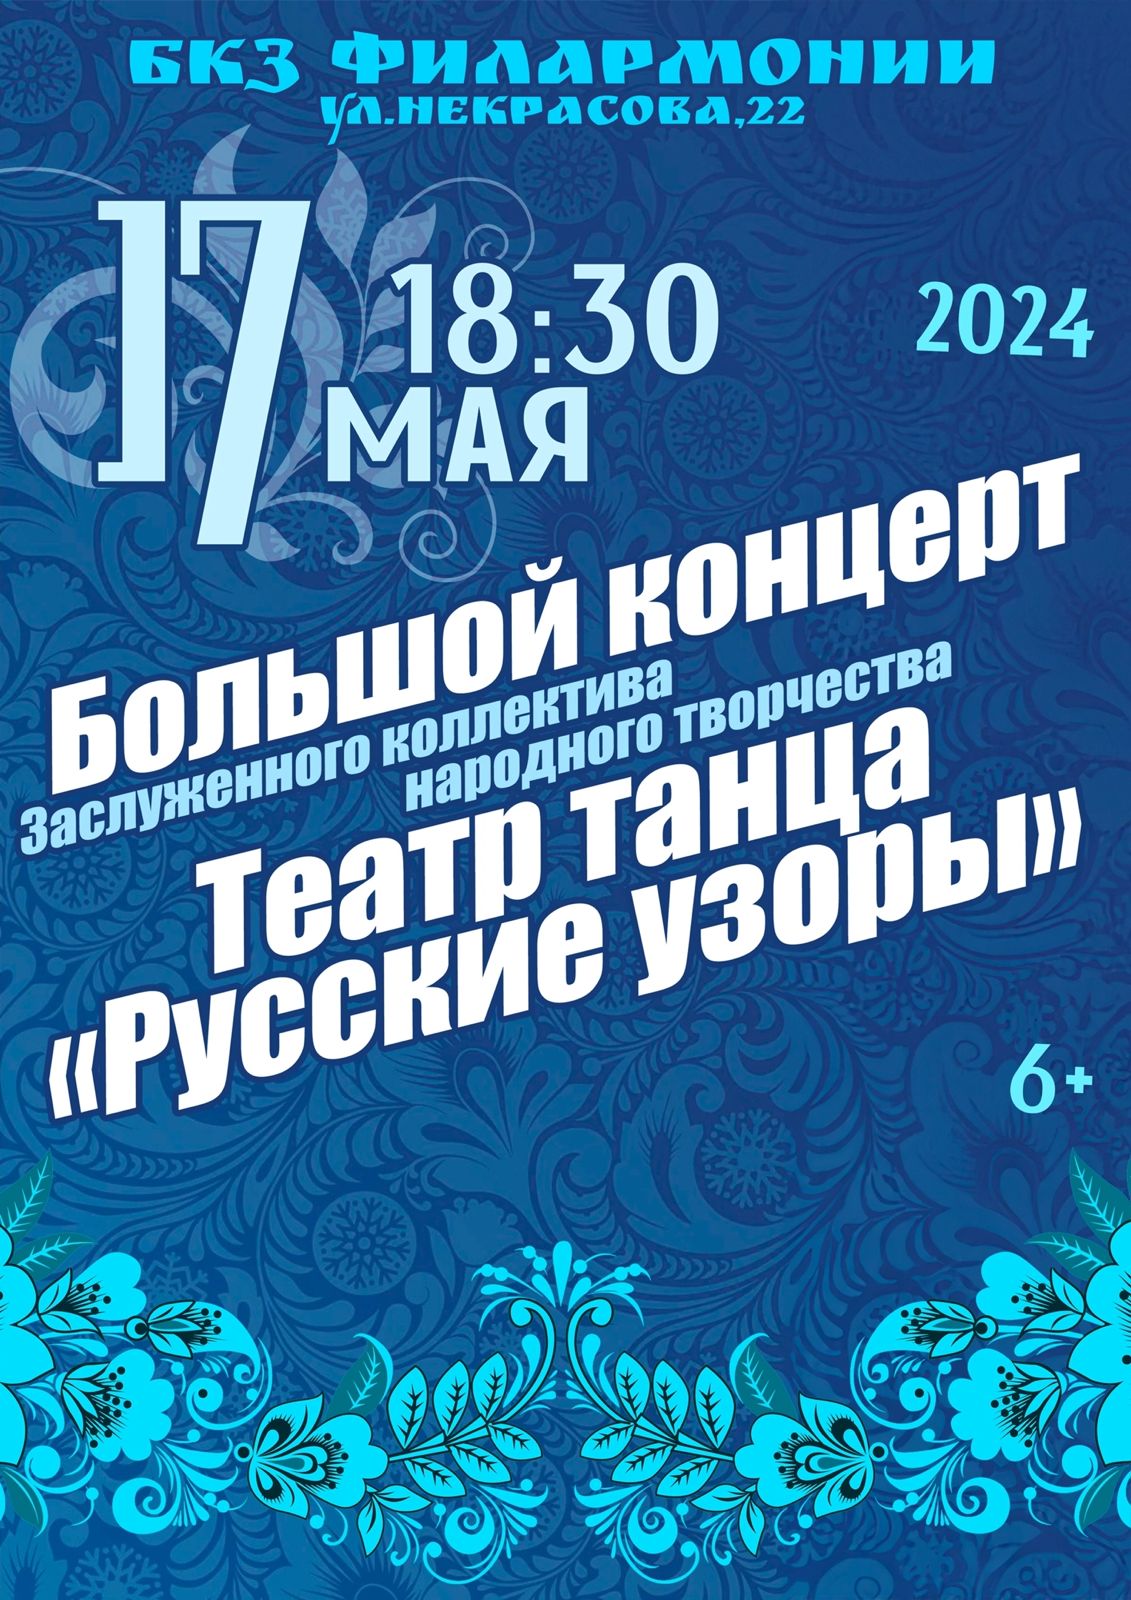 Большой концерт Театра танца "Русские узоры"